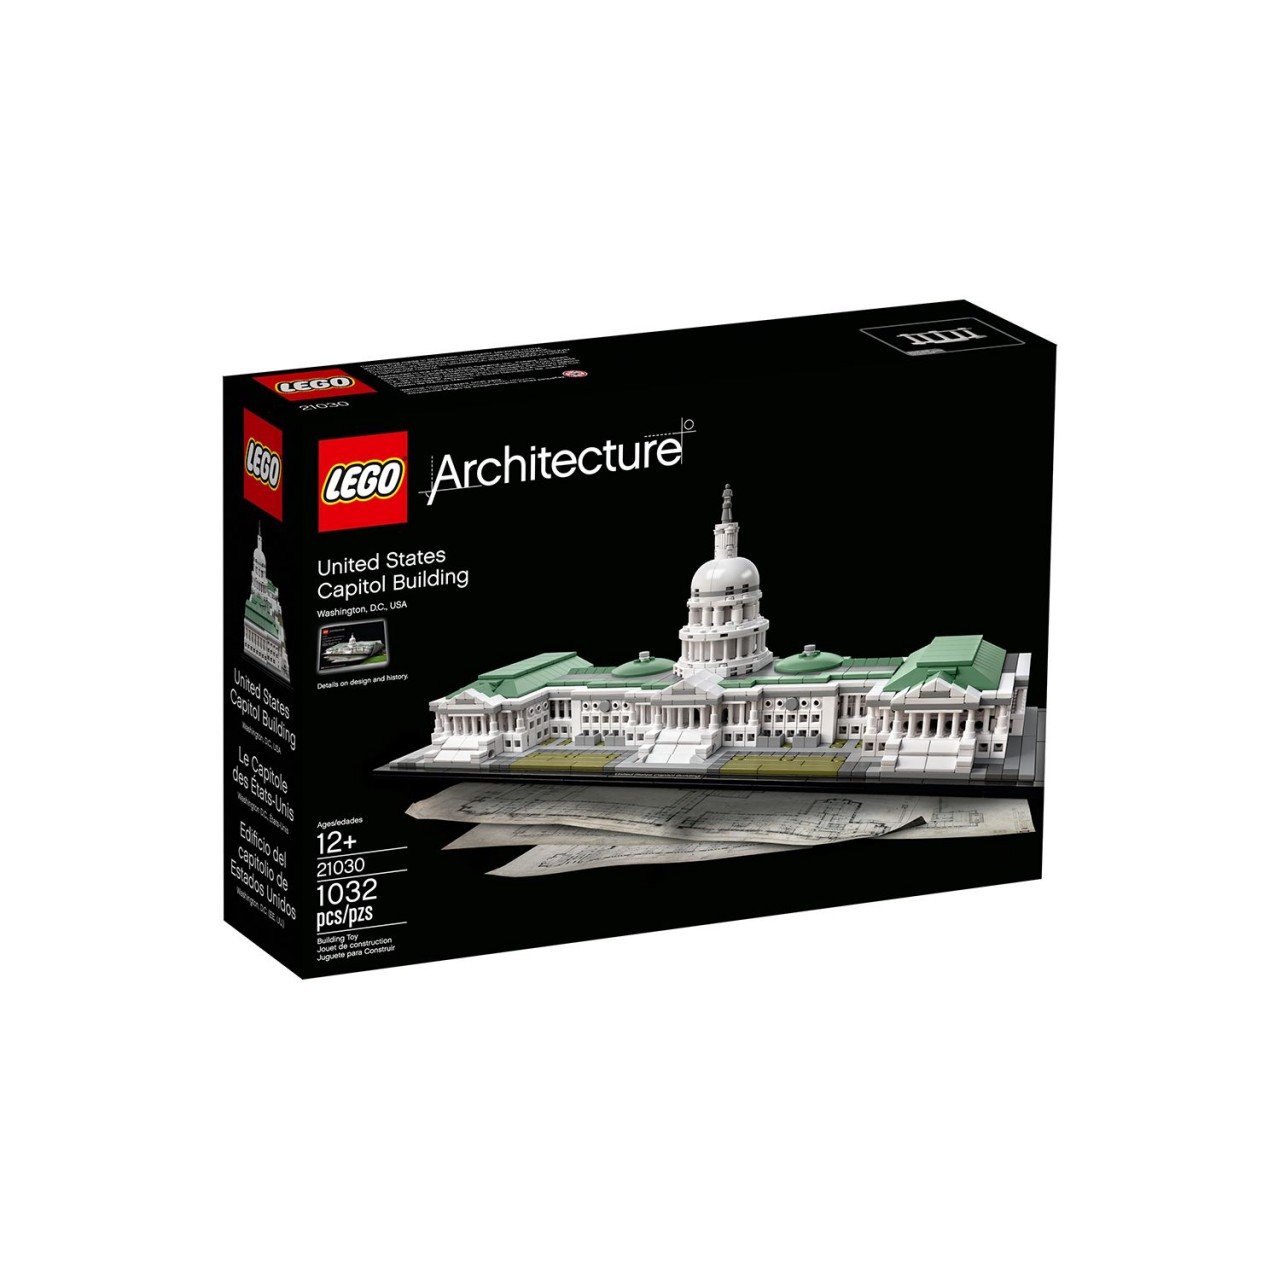 LEGO ARCHITECTURE 21030 Das Kapitol